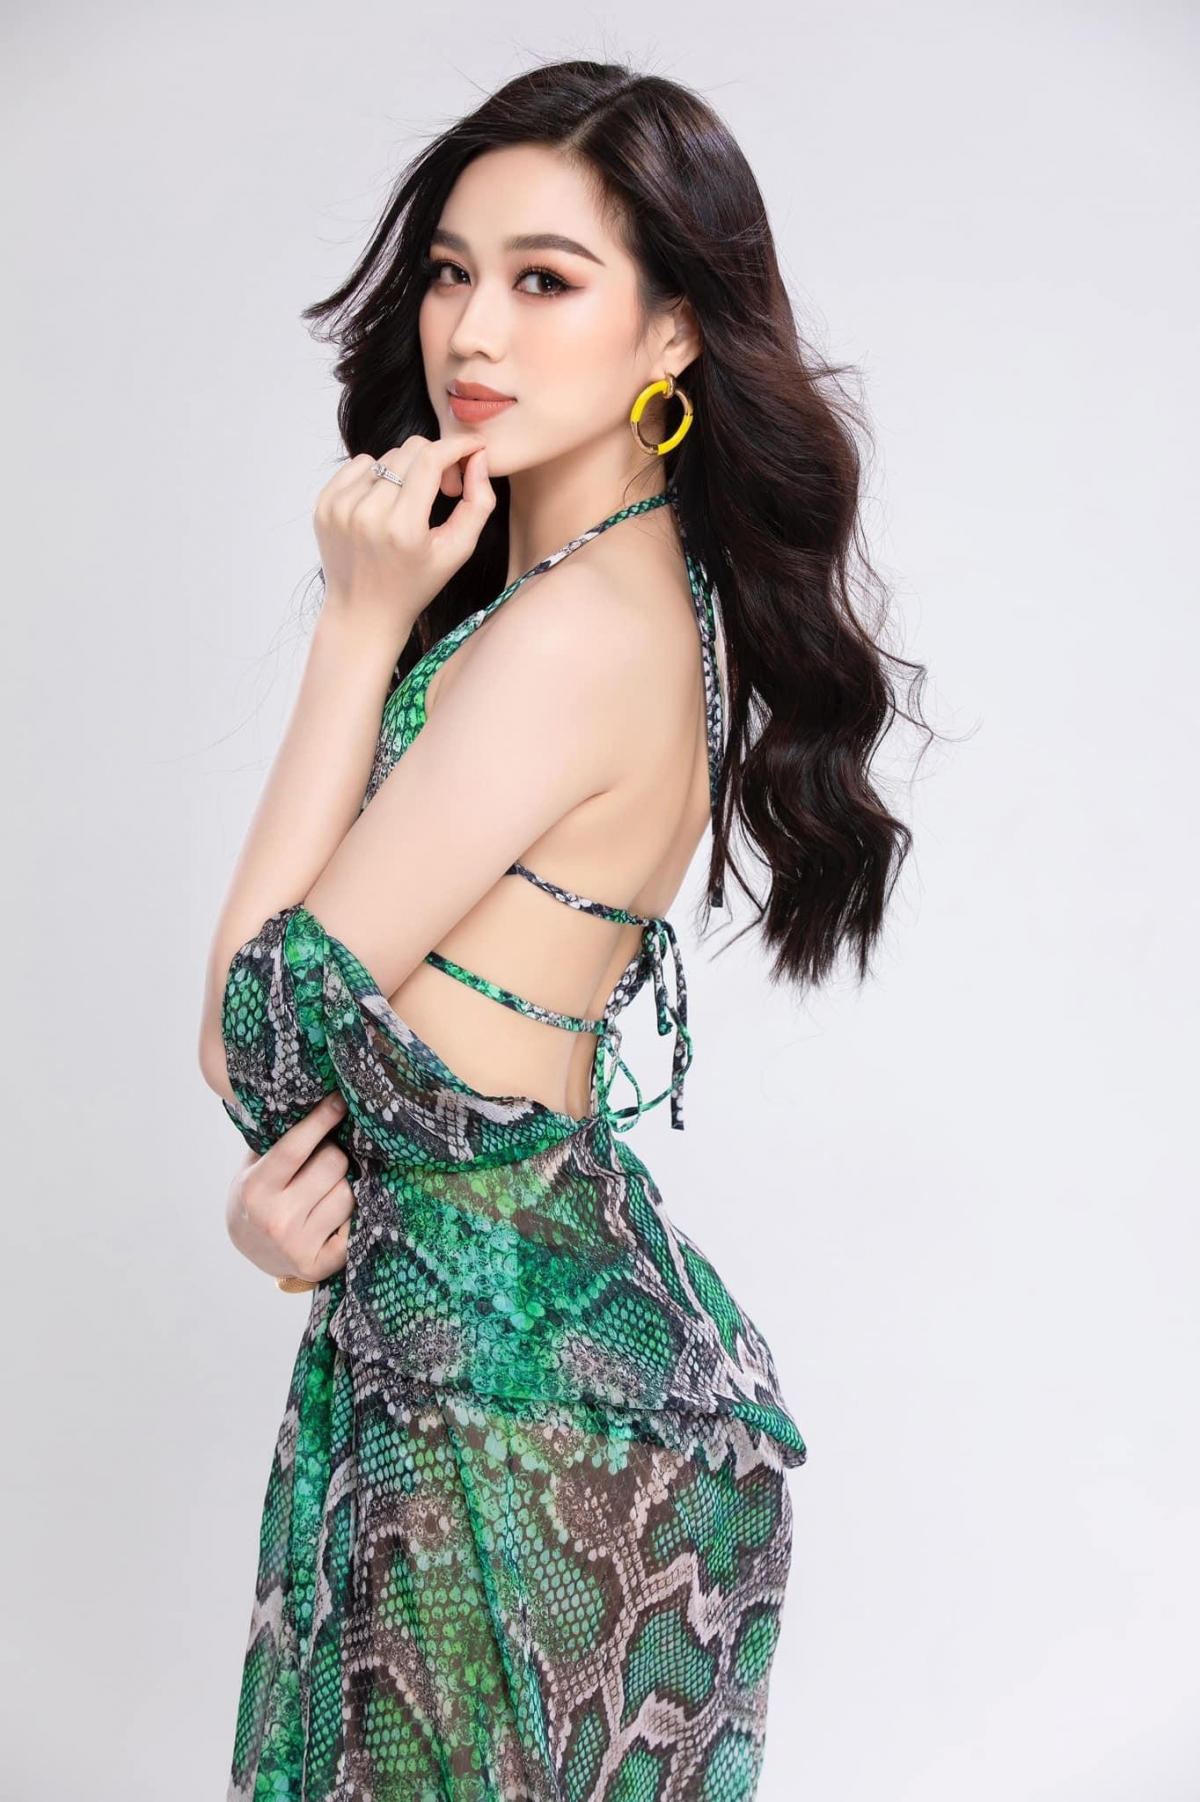 Hoa hậu Đỗ Thị Hà nóng bỏng trong bộ ảnh bikini họa tiết da rắn - Ảnh 3.